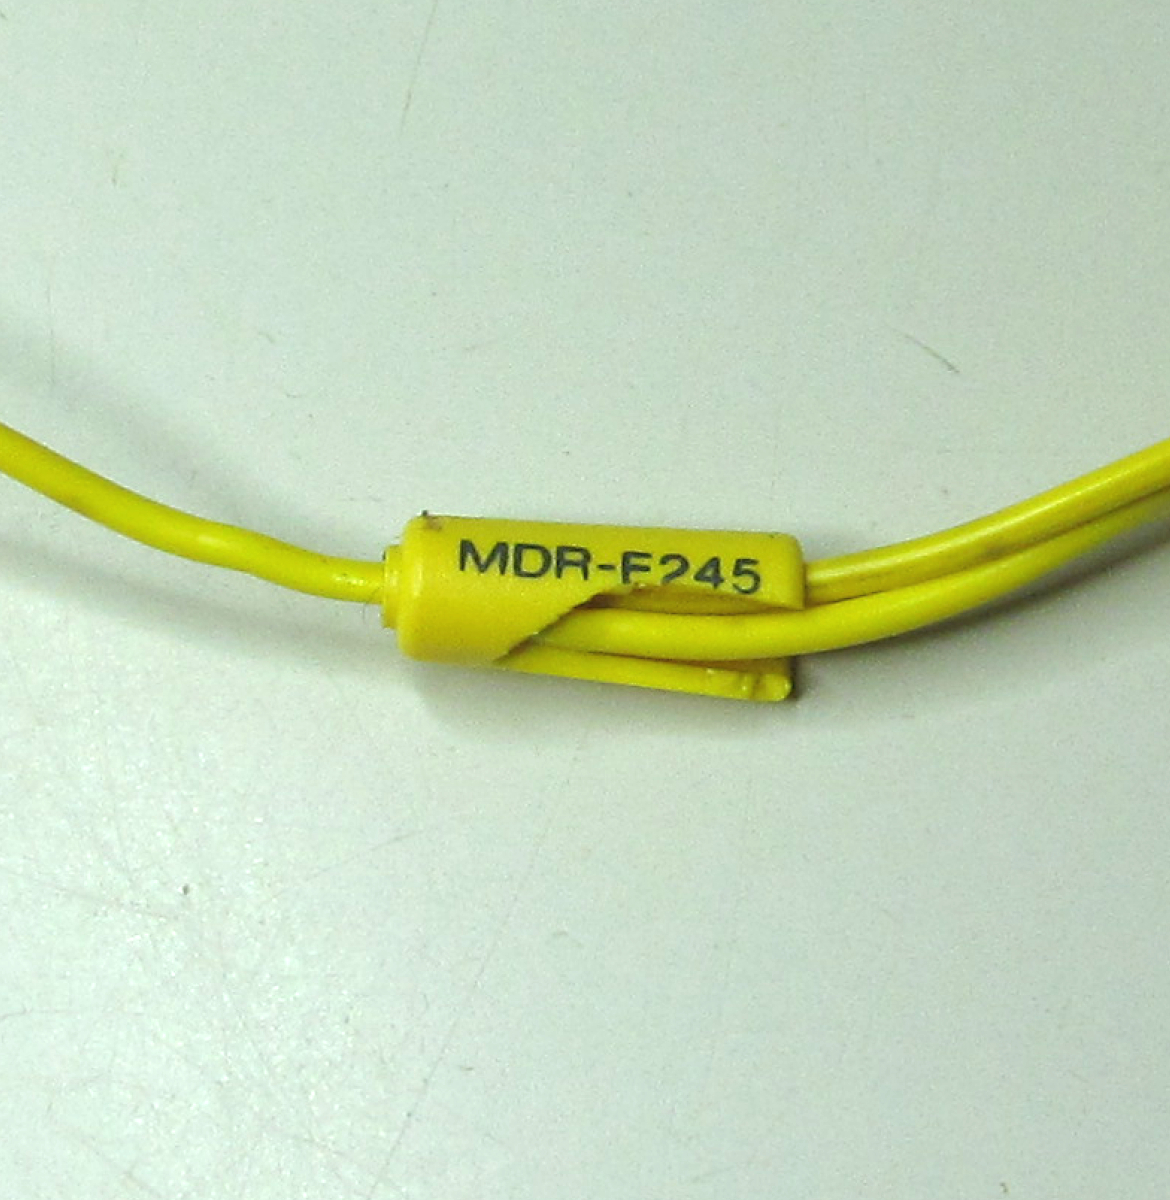 SONY/MDR-E245/ステレオイヤホン/WM-F75用/WM-75用の画像4